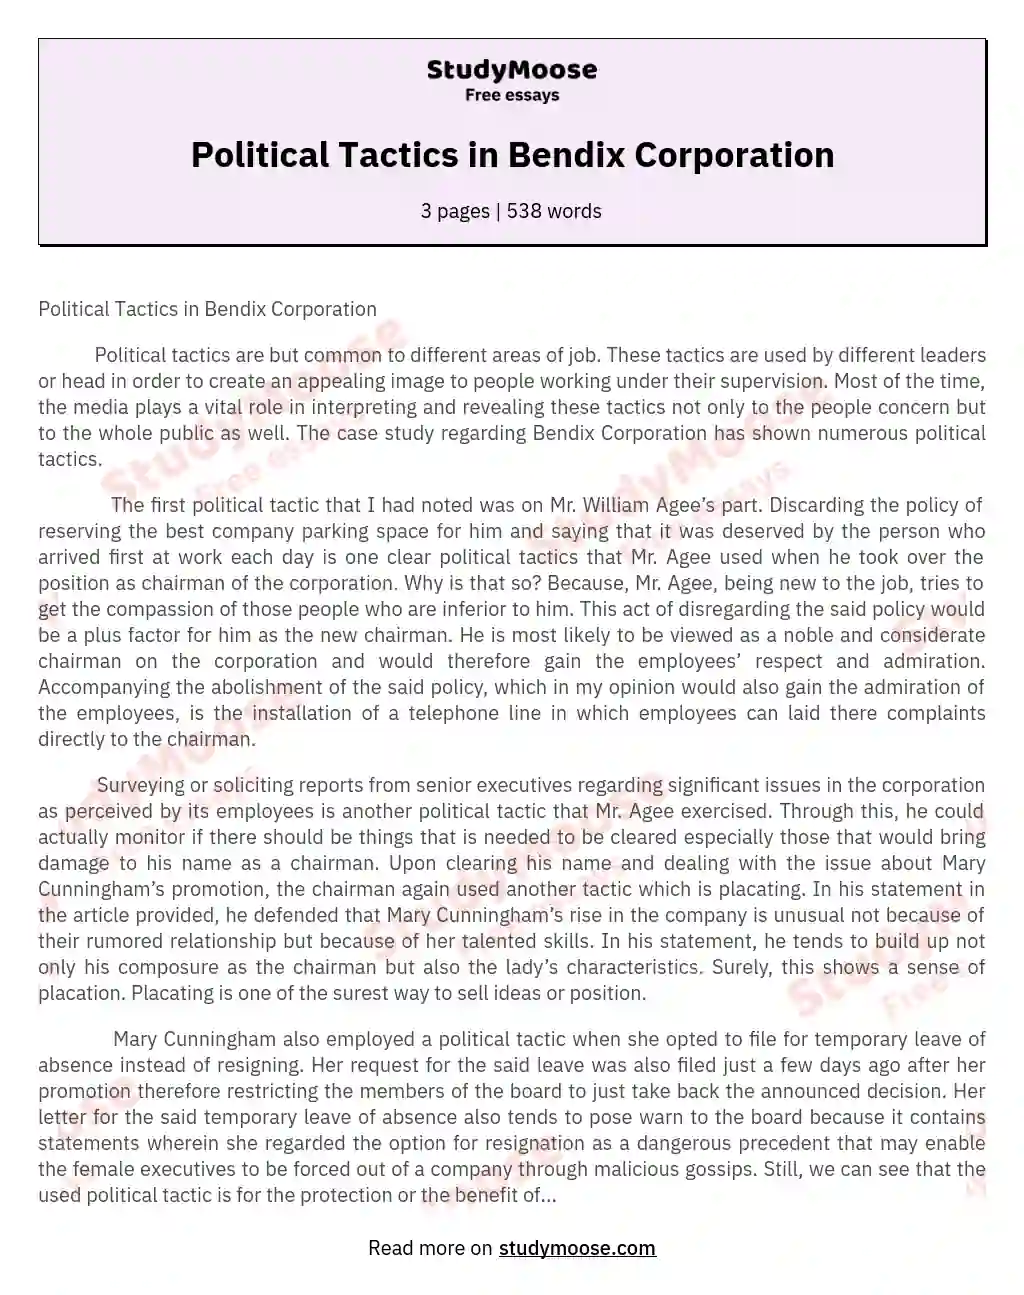 Political Tactics in Bendix Corporation